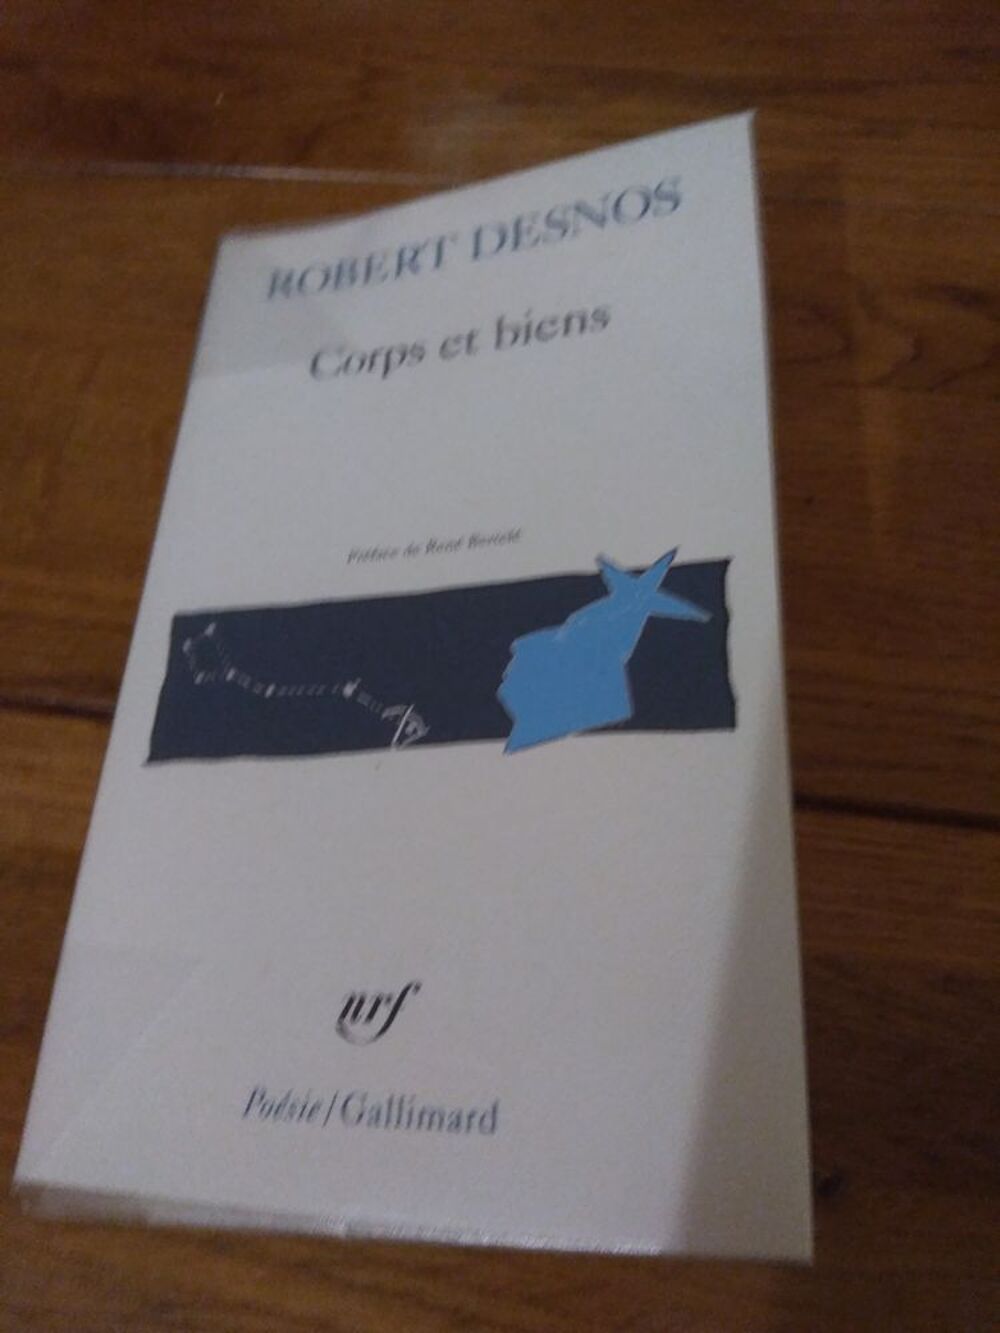 Corps et biens - Robert Desnos Livres et BD